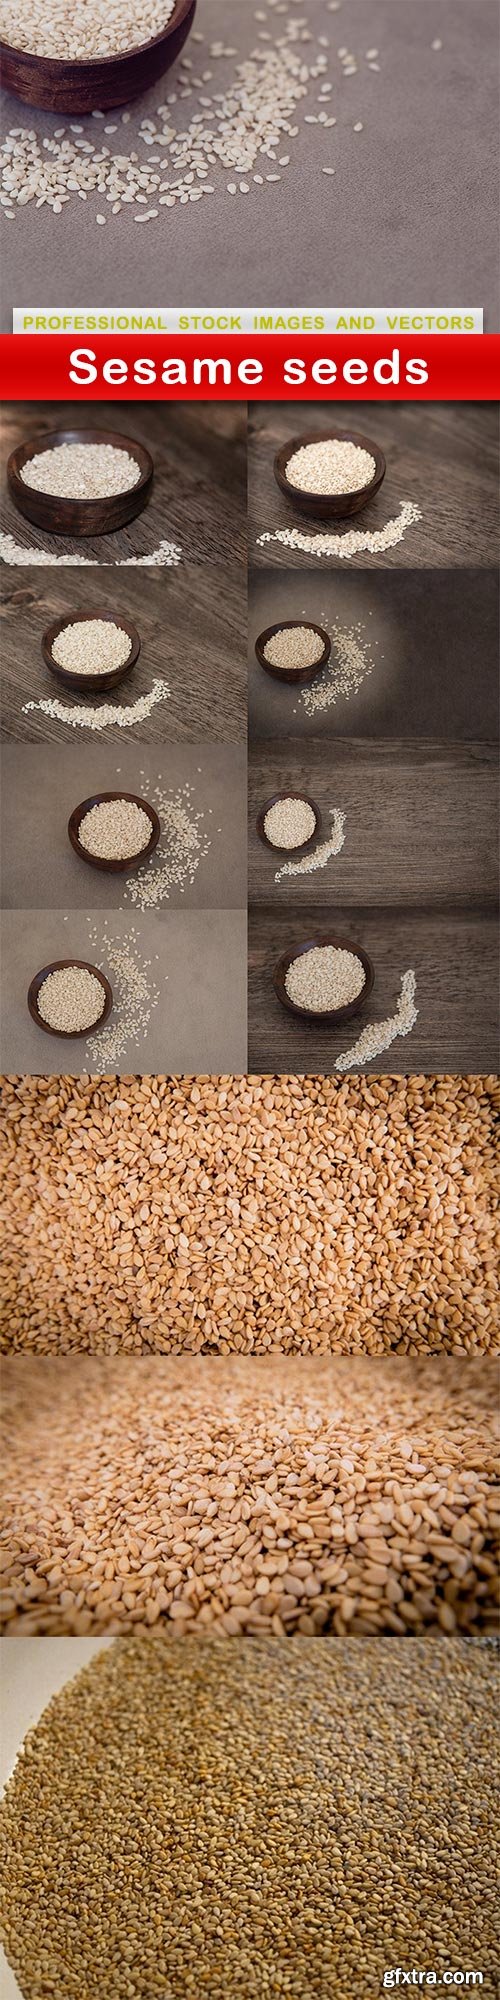 Sesame seeds - 12 UHQ JPEG